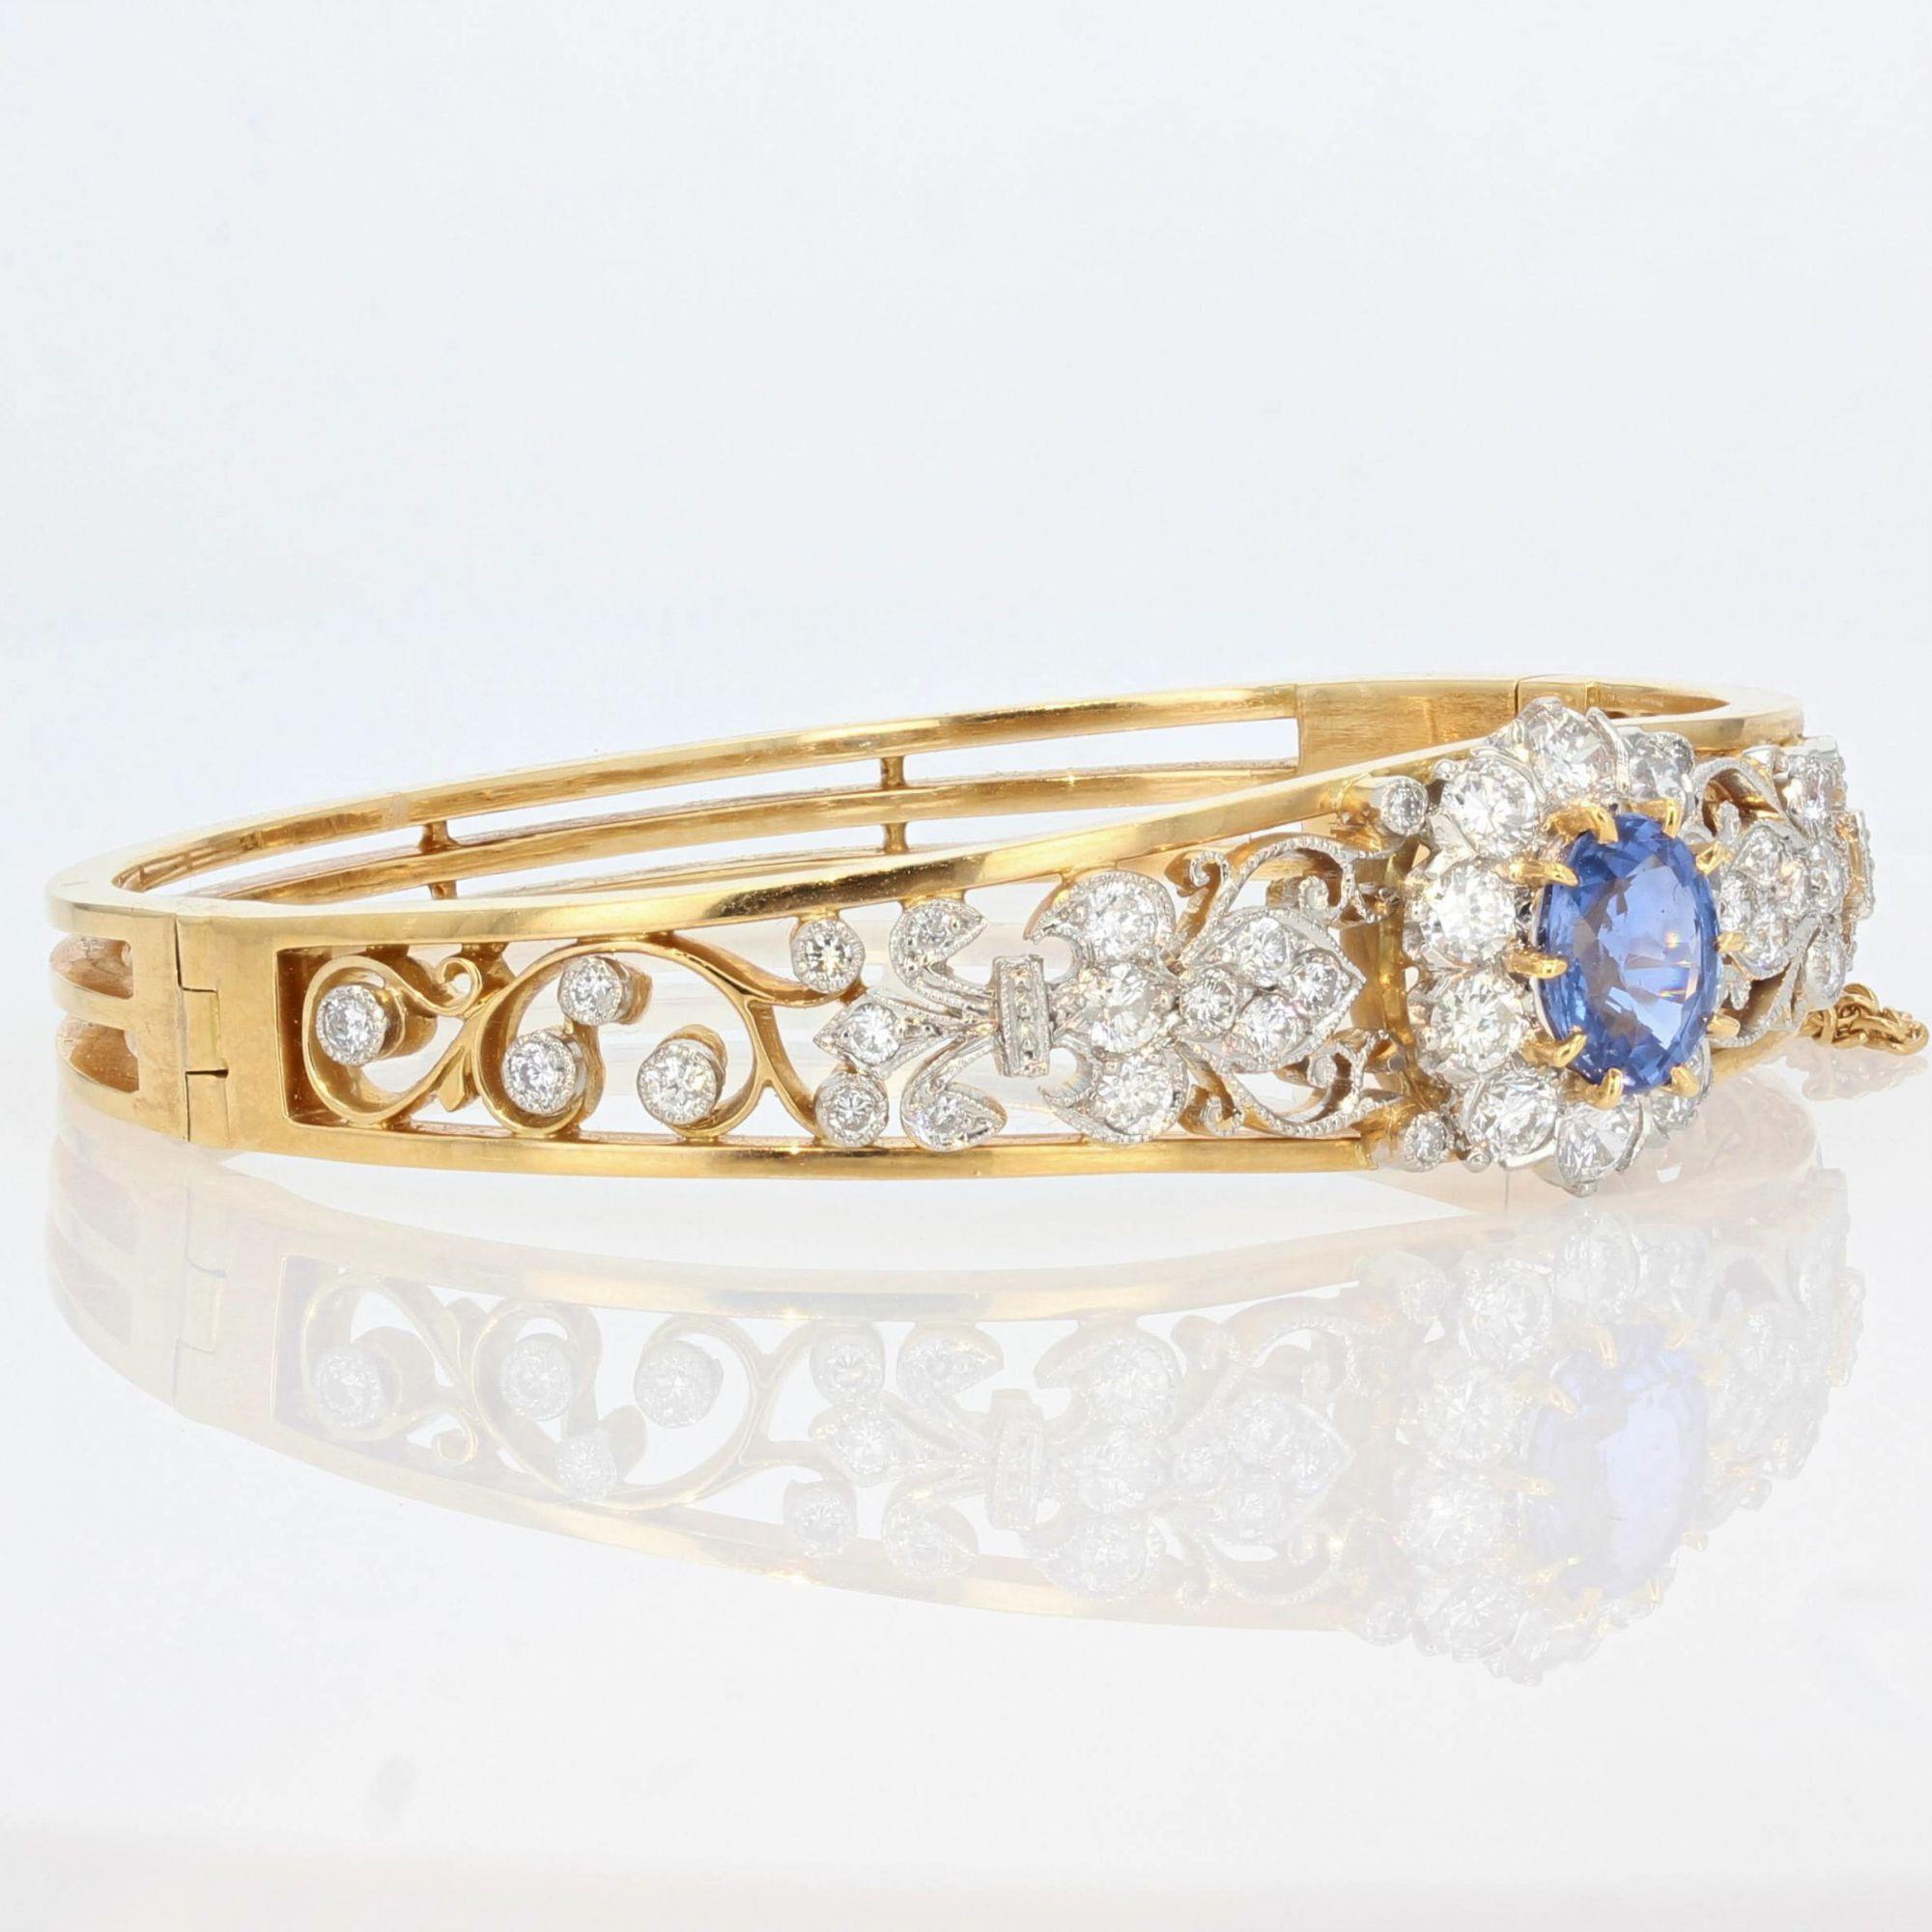 Oval Cut French Sapphire Diamond 18 Karat Yellow Gold Opening Bangle Bracelet 